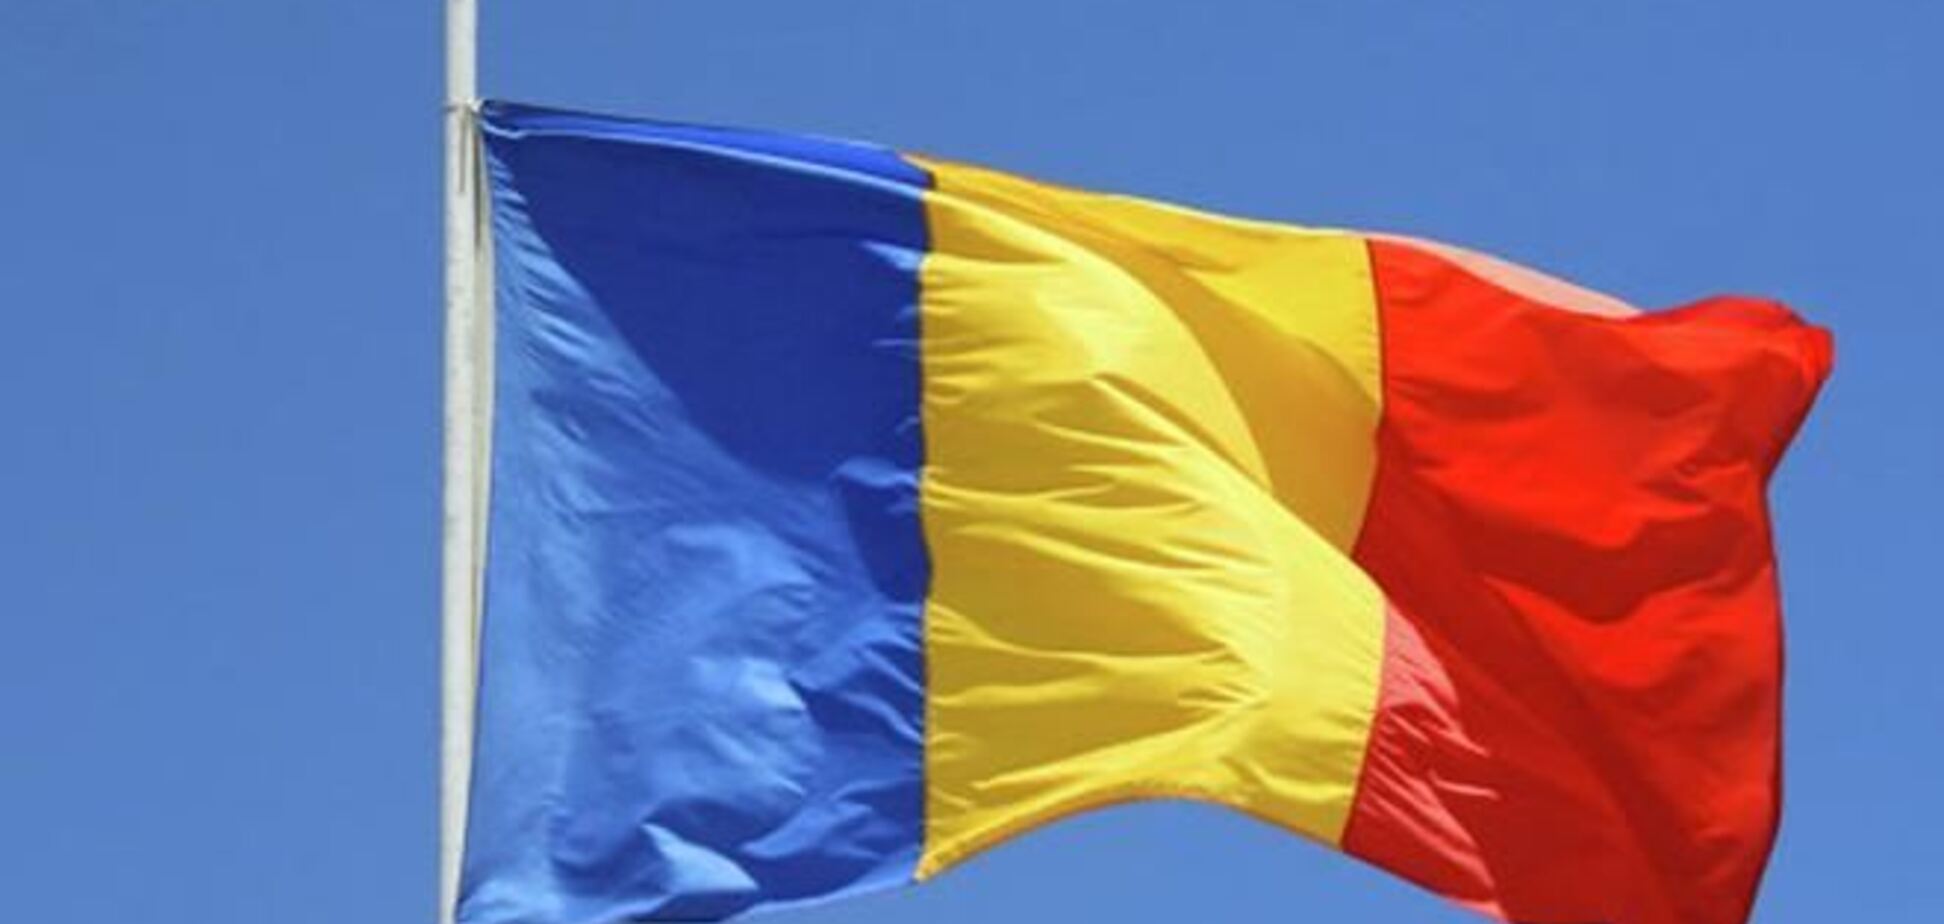 Румунія пообіцяла і далі підтримувати євроінтеграцію України